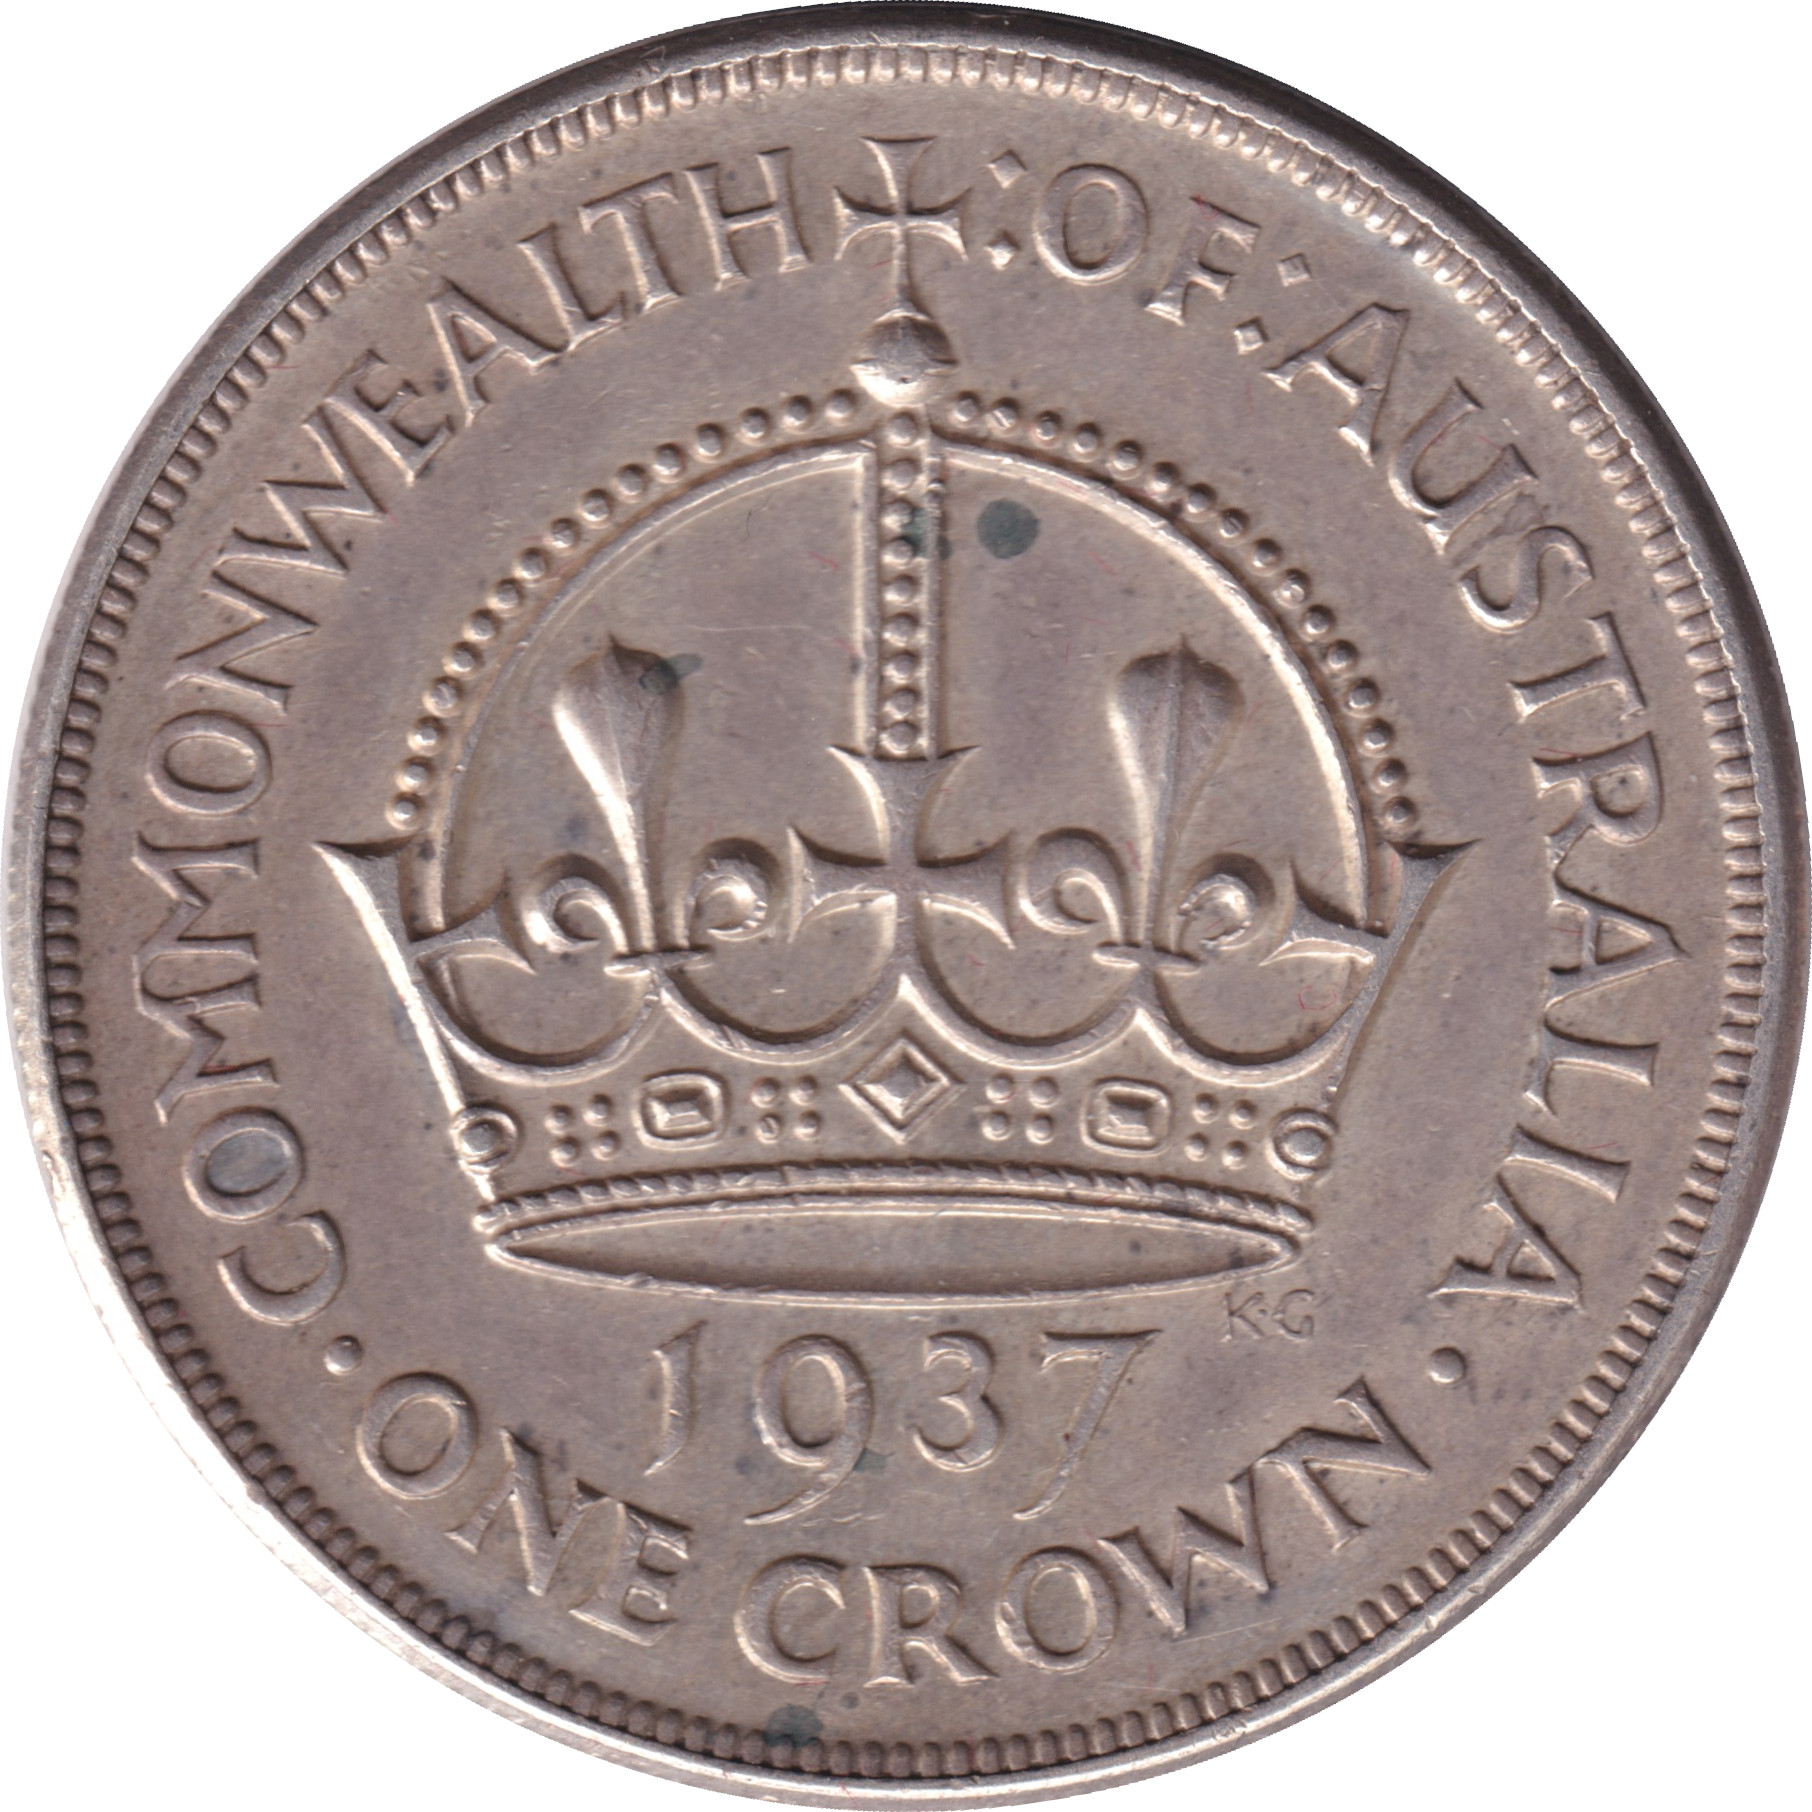 1 crown - Georges VI